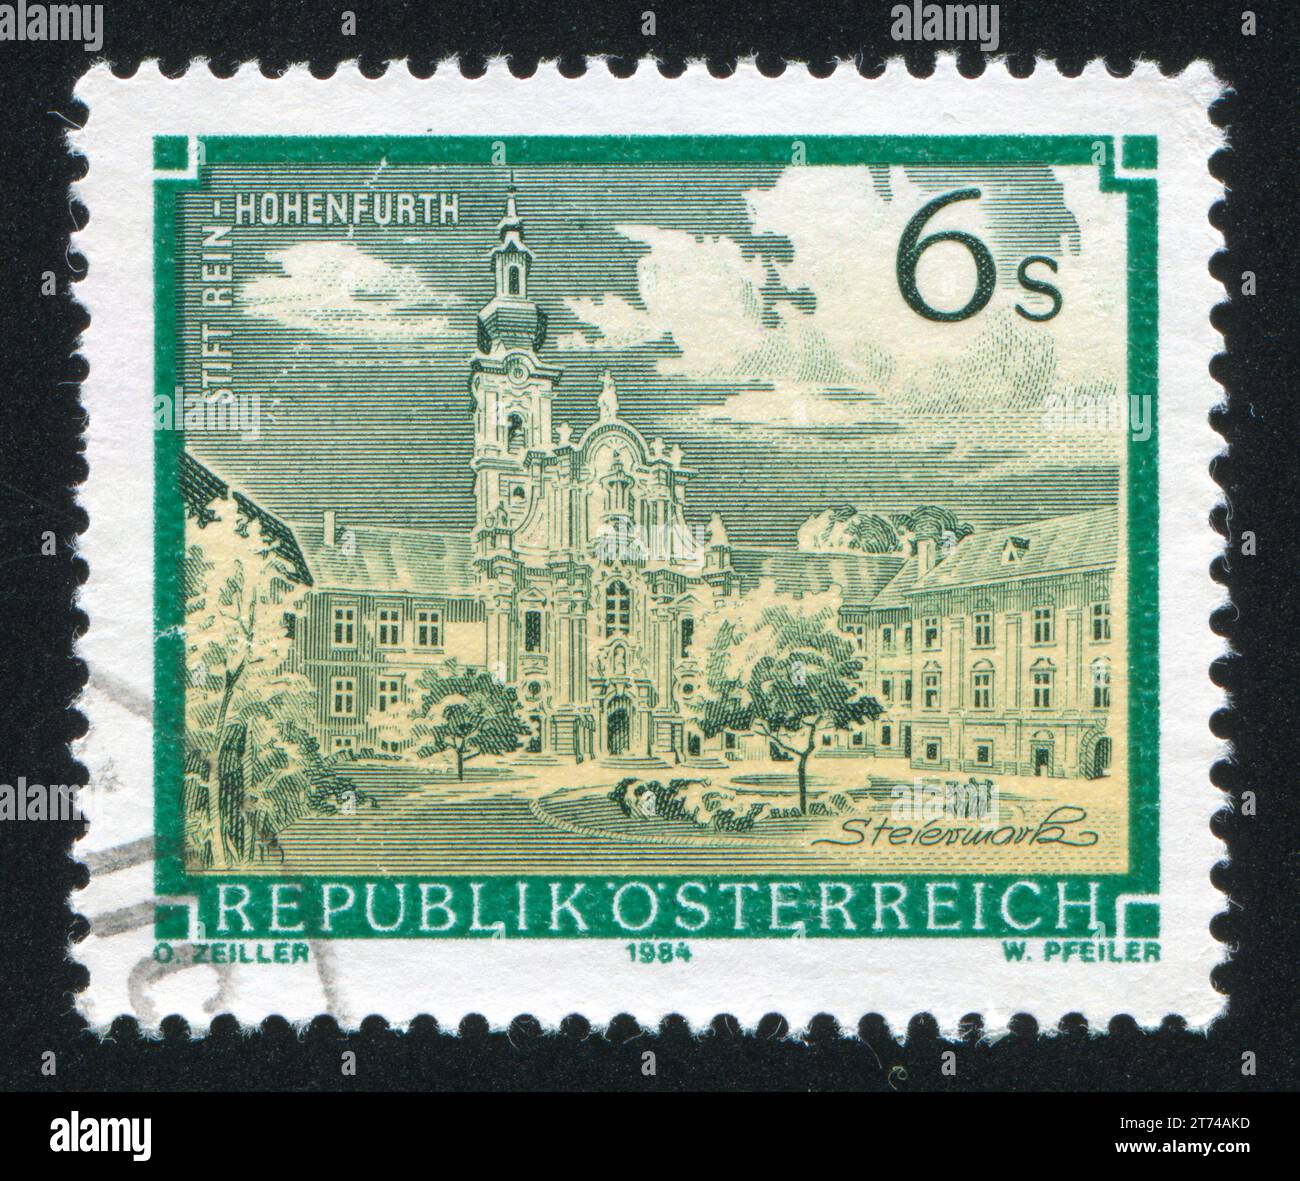 AUTRICHE - CIRCA 1984 : timbre imprimé par l'Autriche, montre rein Hohenfurth, circa 1984 Banque D'Images